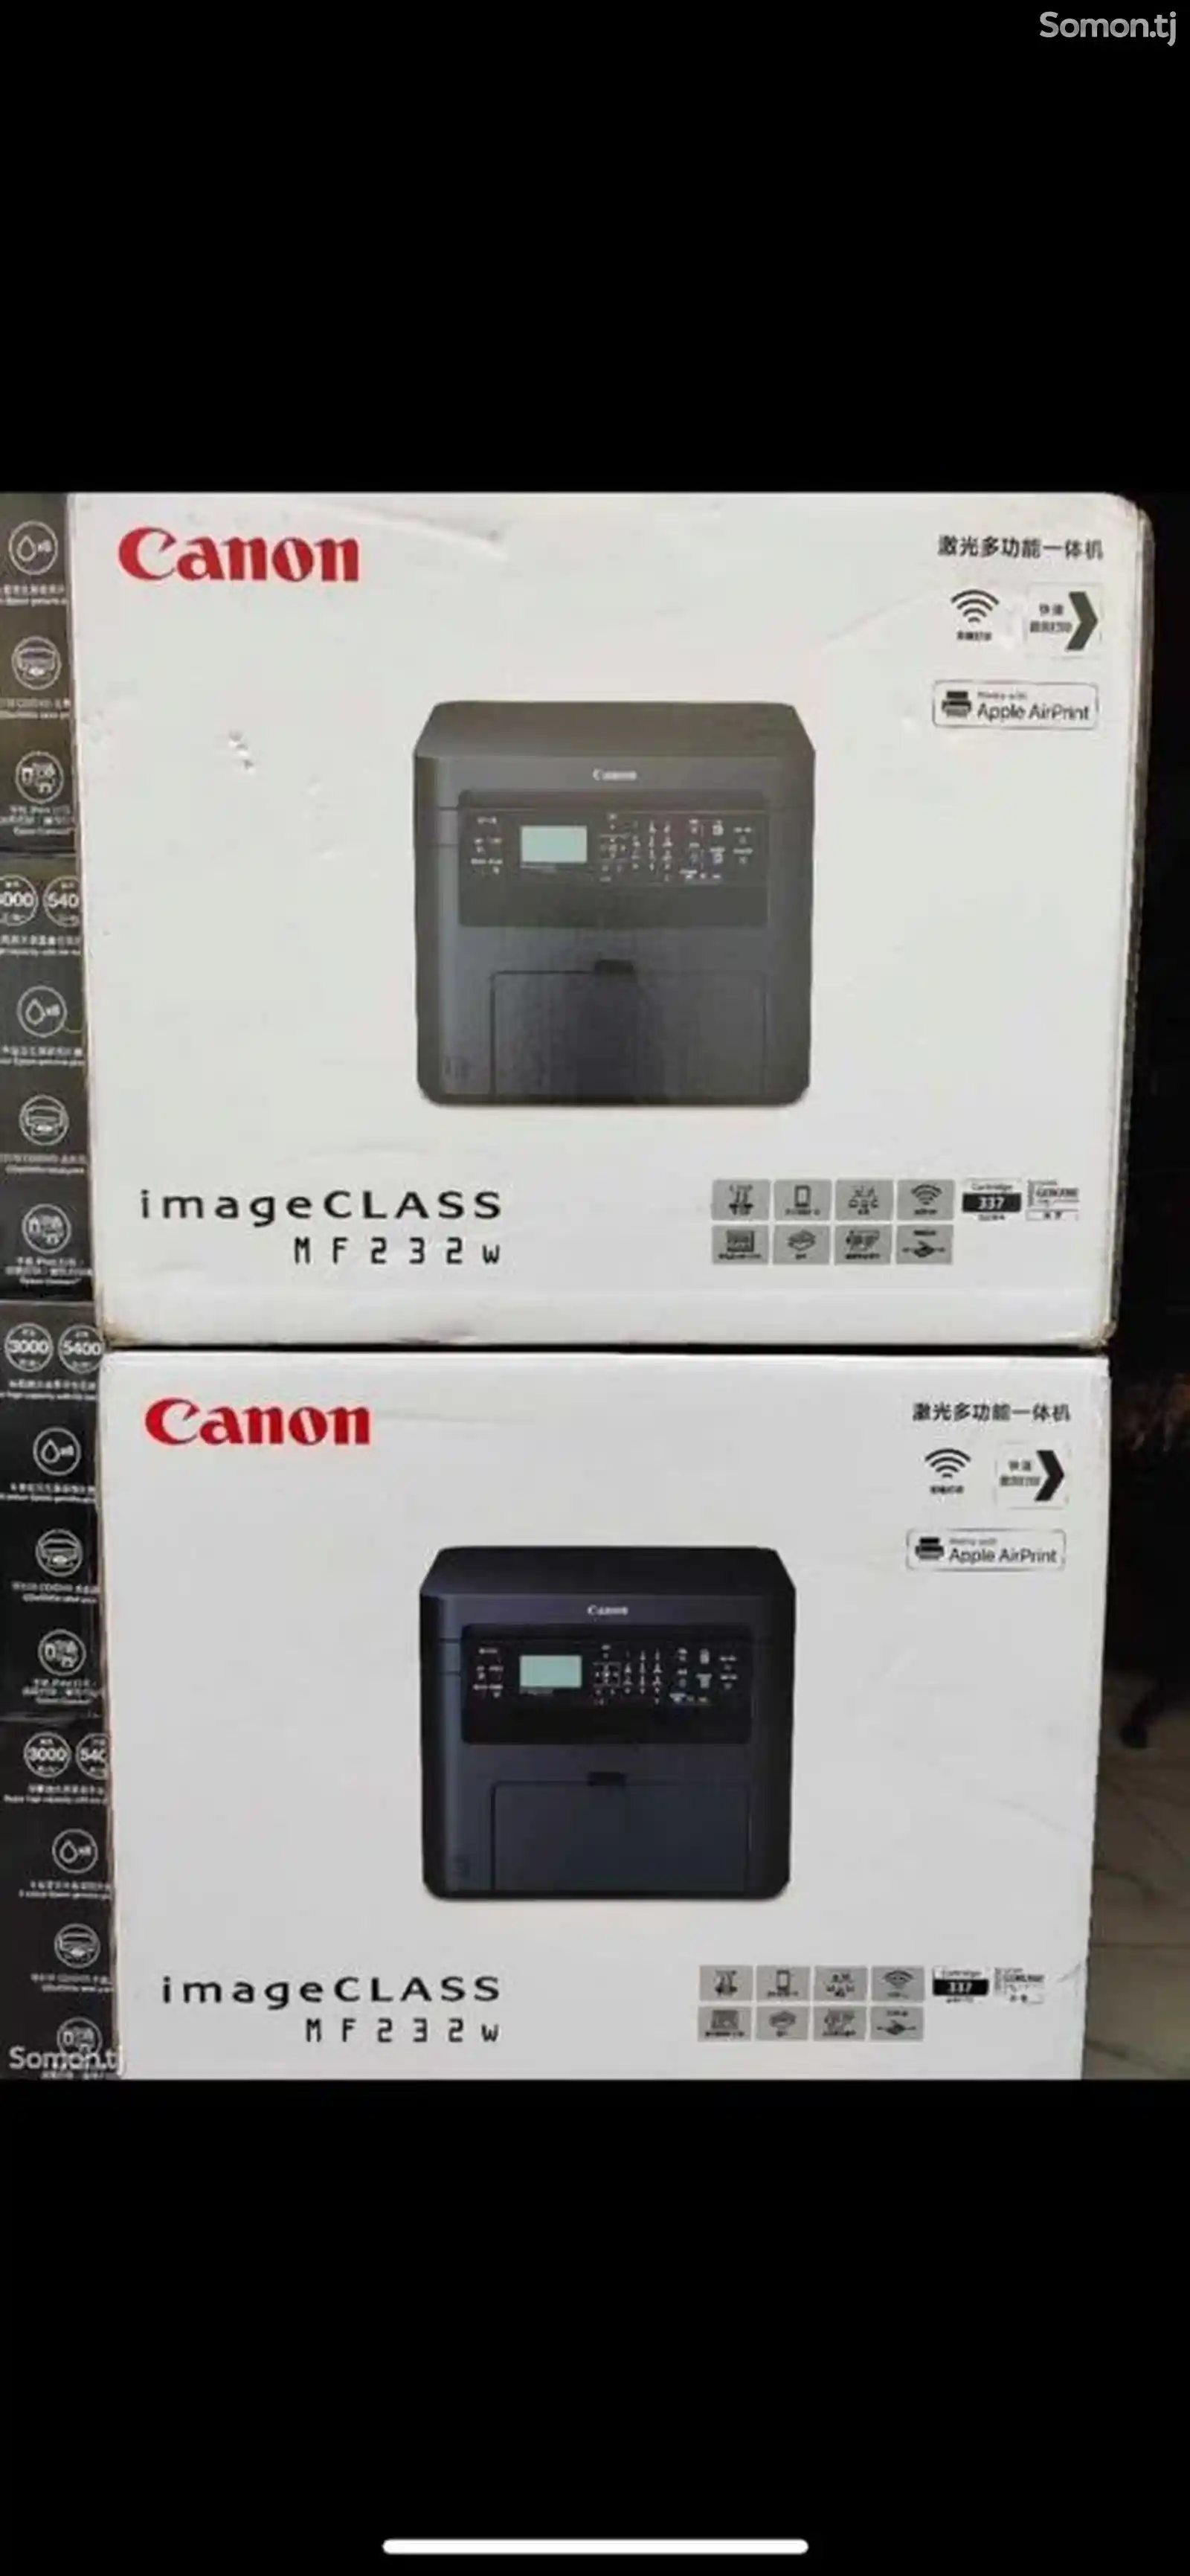 Принтер для копии, сканера и распечатки-1